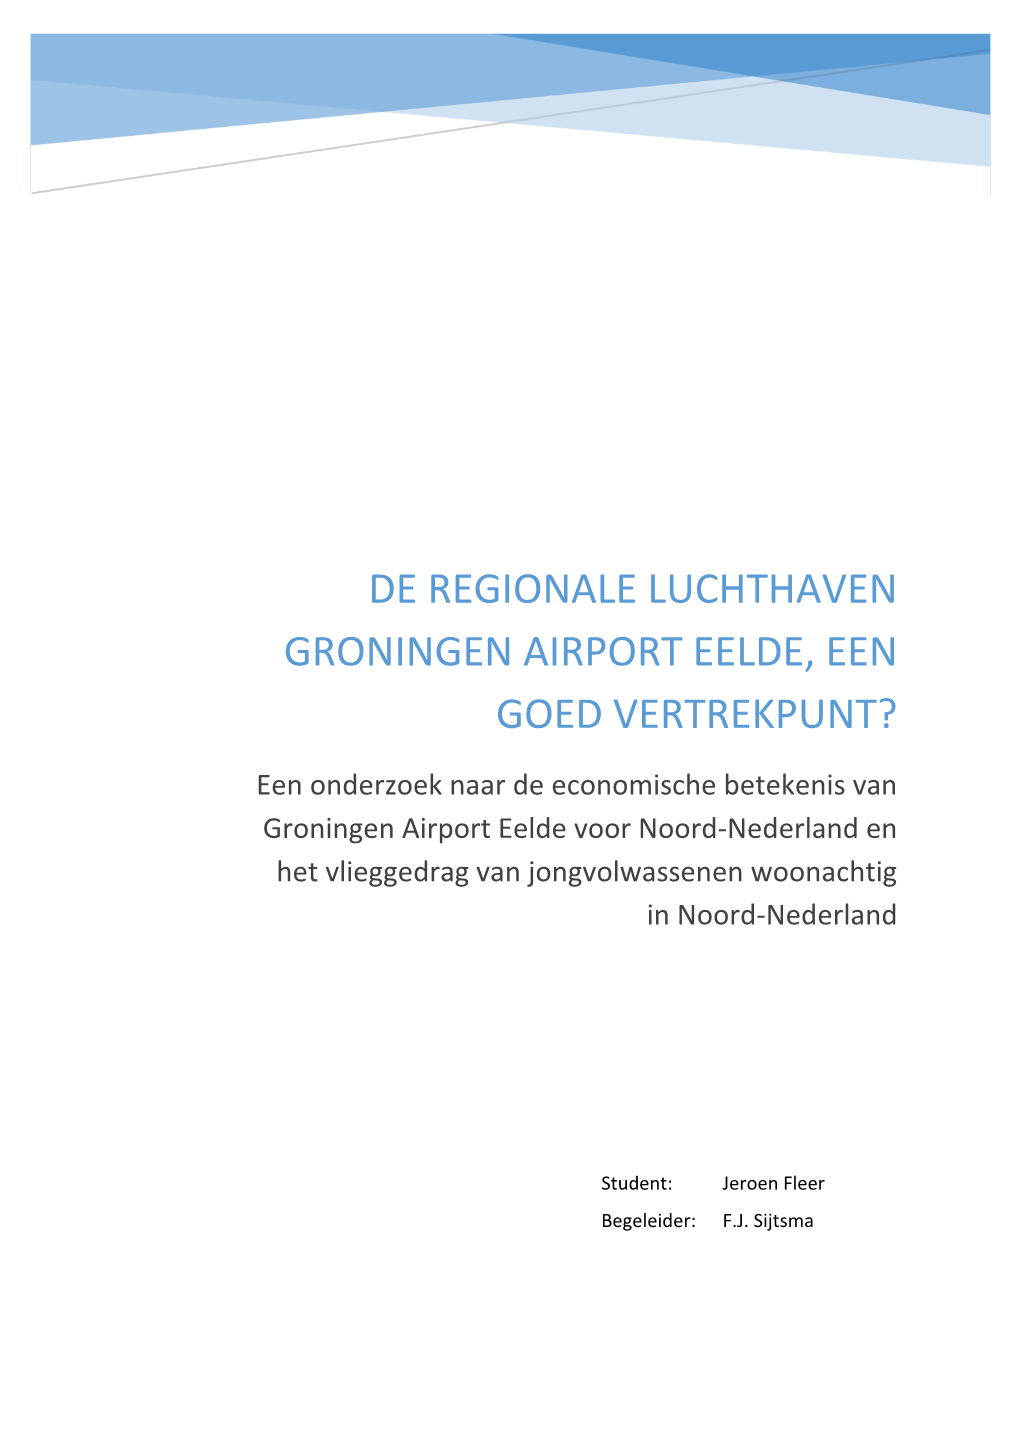 De Regionale Luchthaven Groningen Airport Eelde, Een Goed Vertrekpunt?